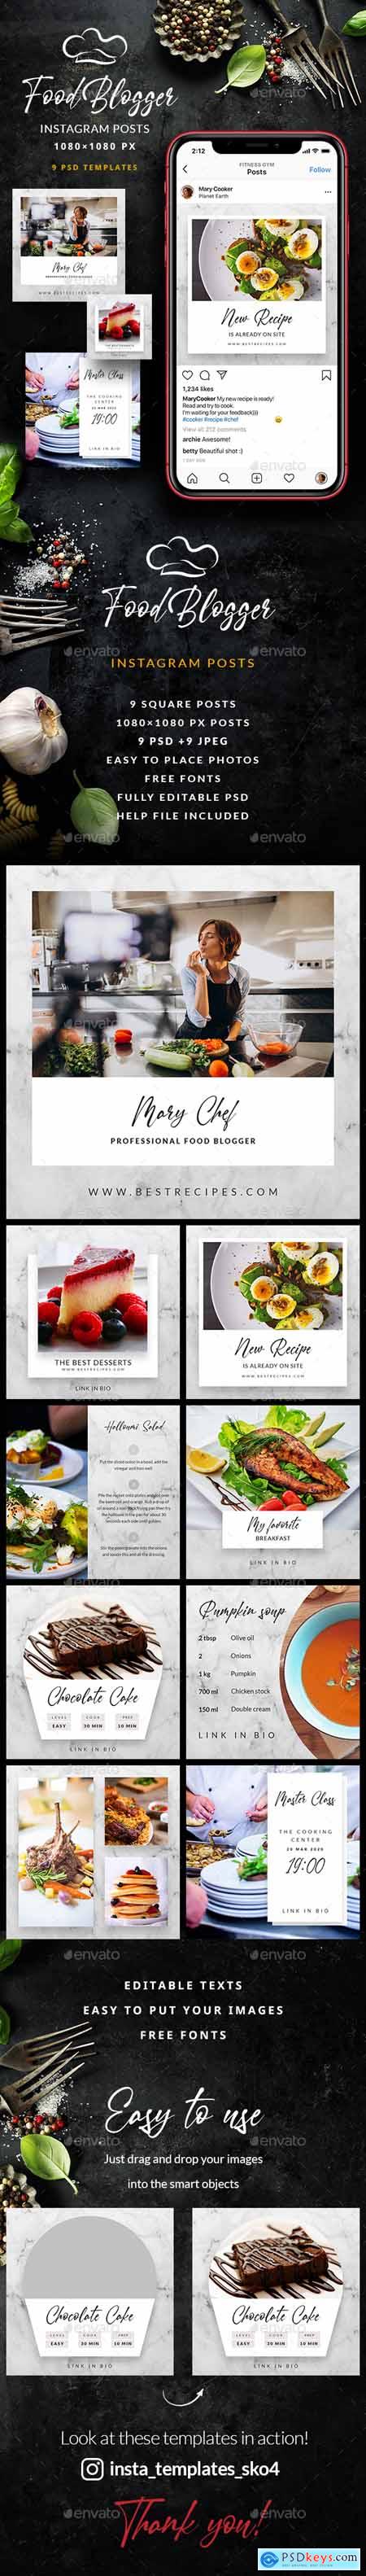 Food Blogger - Instagram Posts 25614998